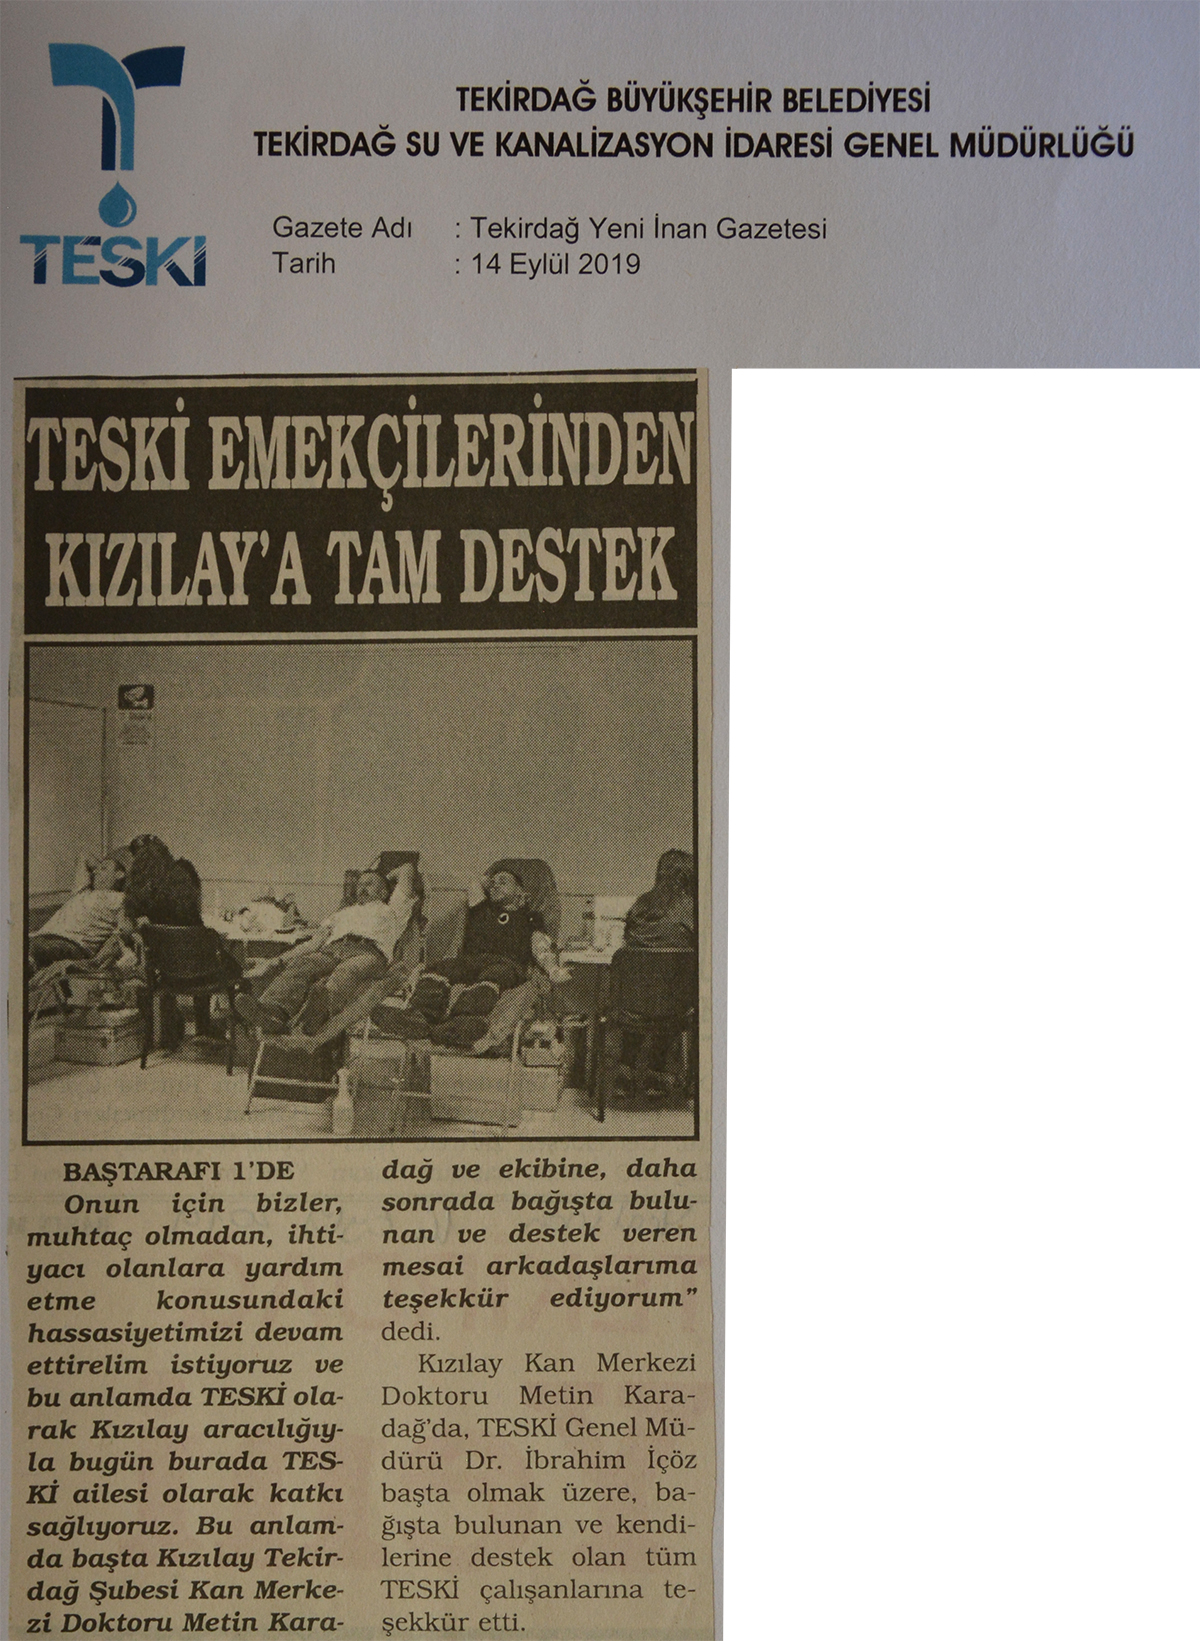 TESKİ Emekçilerinden Kızılay'a Tam Destek (Tekirdağ Yeni İnan Gazetesi)